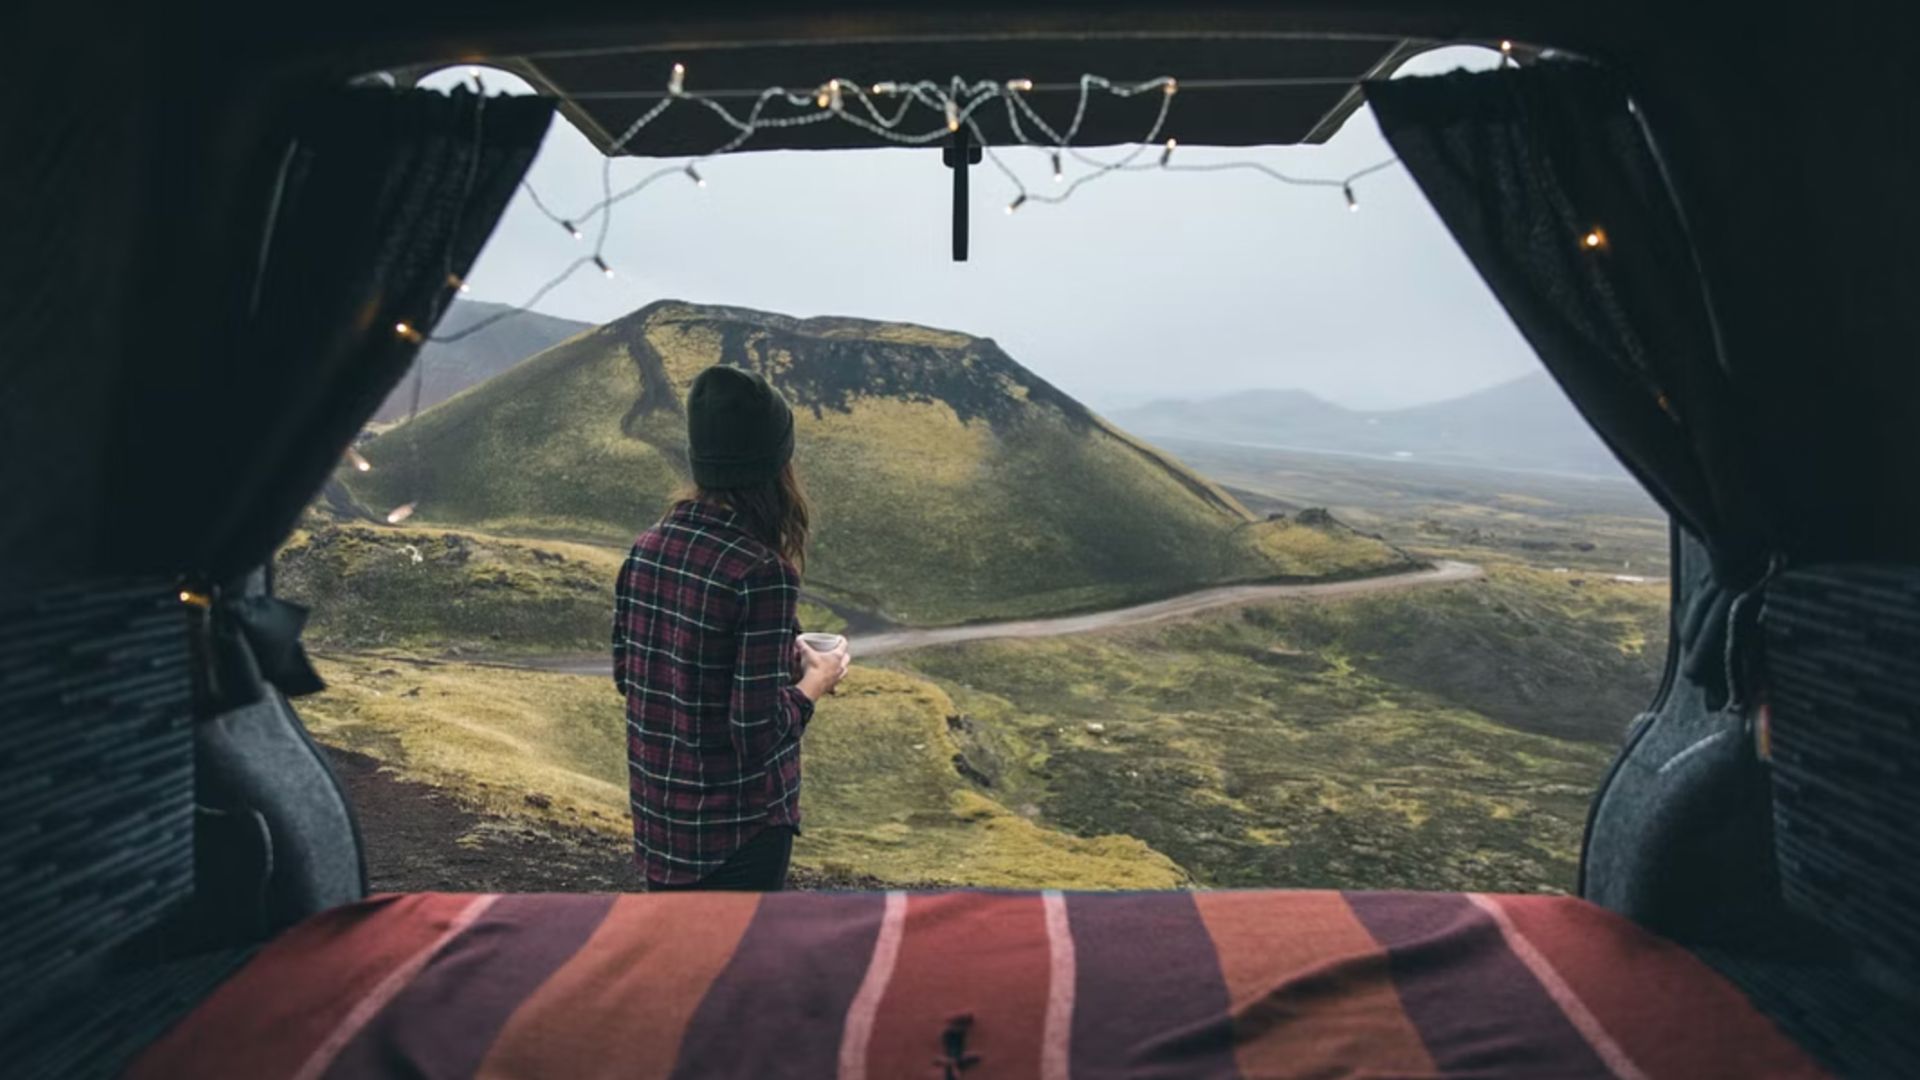 Camperlife in Iceland